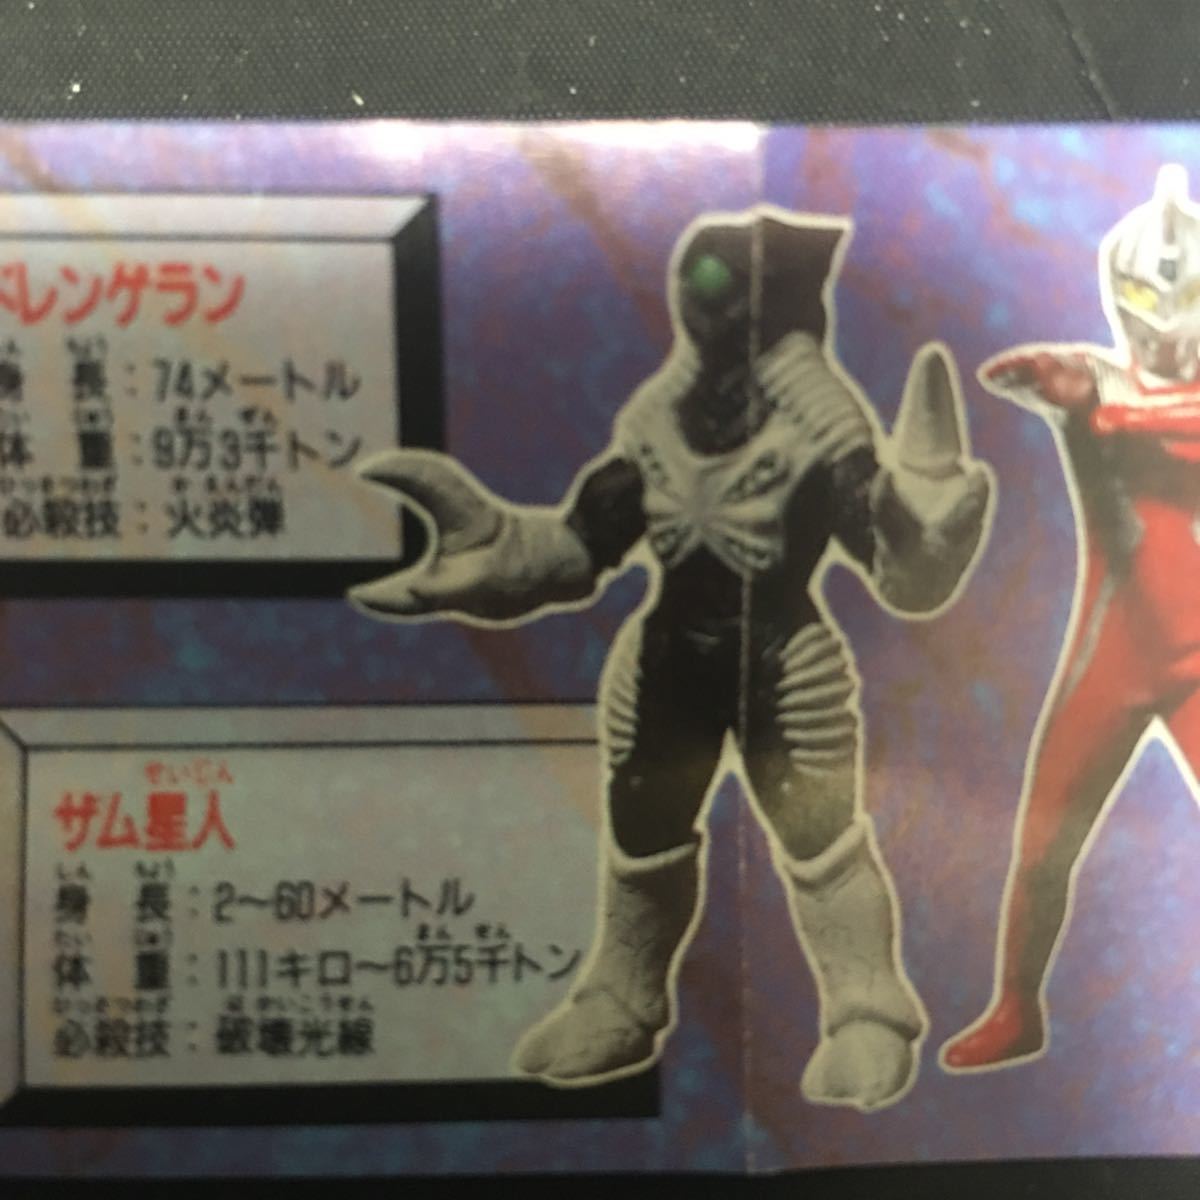 HG серии * Ultraman * супер воитель рождение сборник * Zam звезда человек * одиночный товар *BANDAI* gashapon * Bandai * иен . Pro 